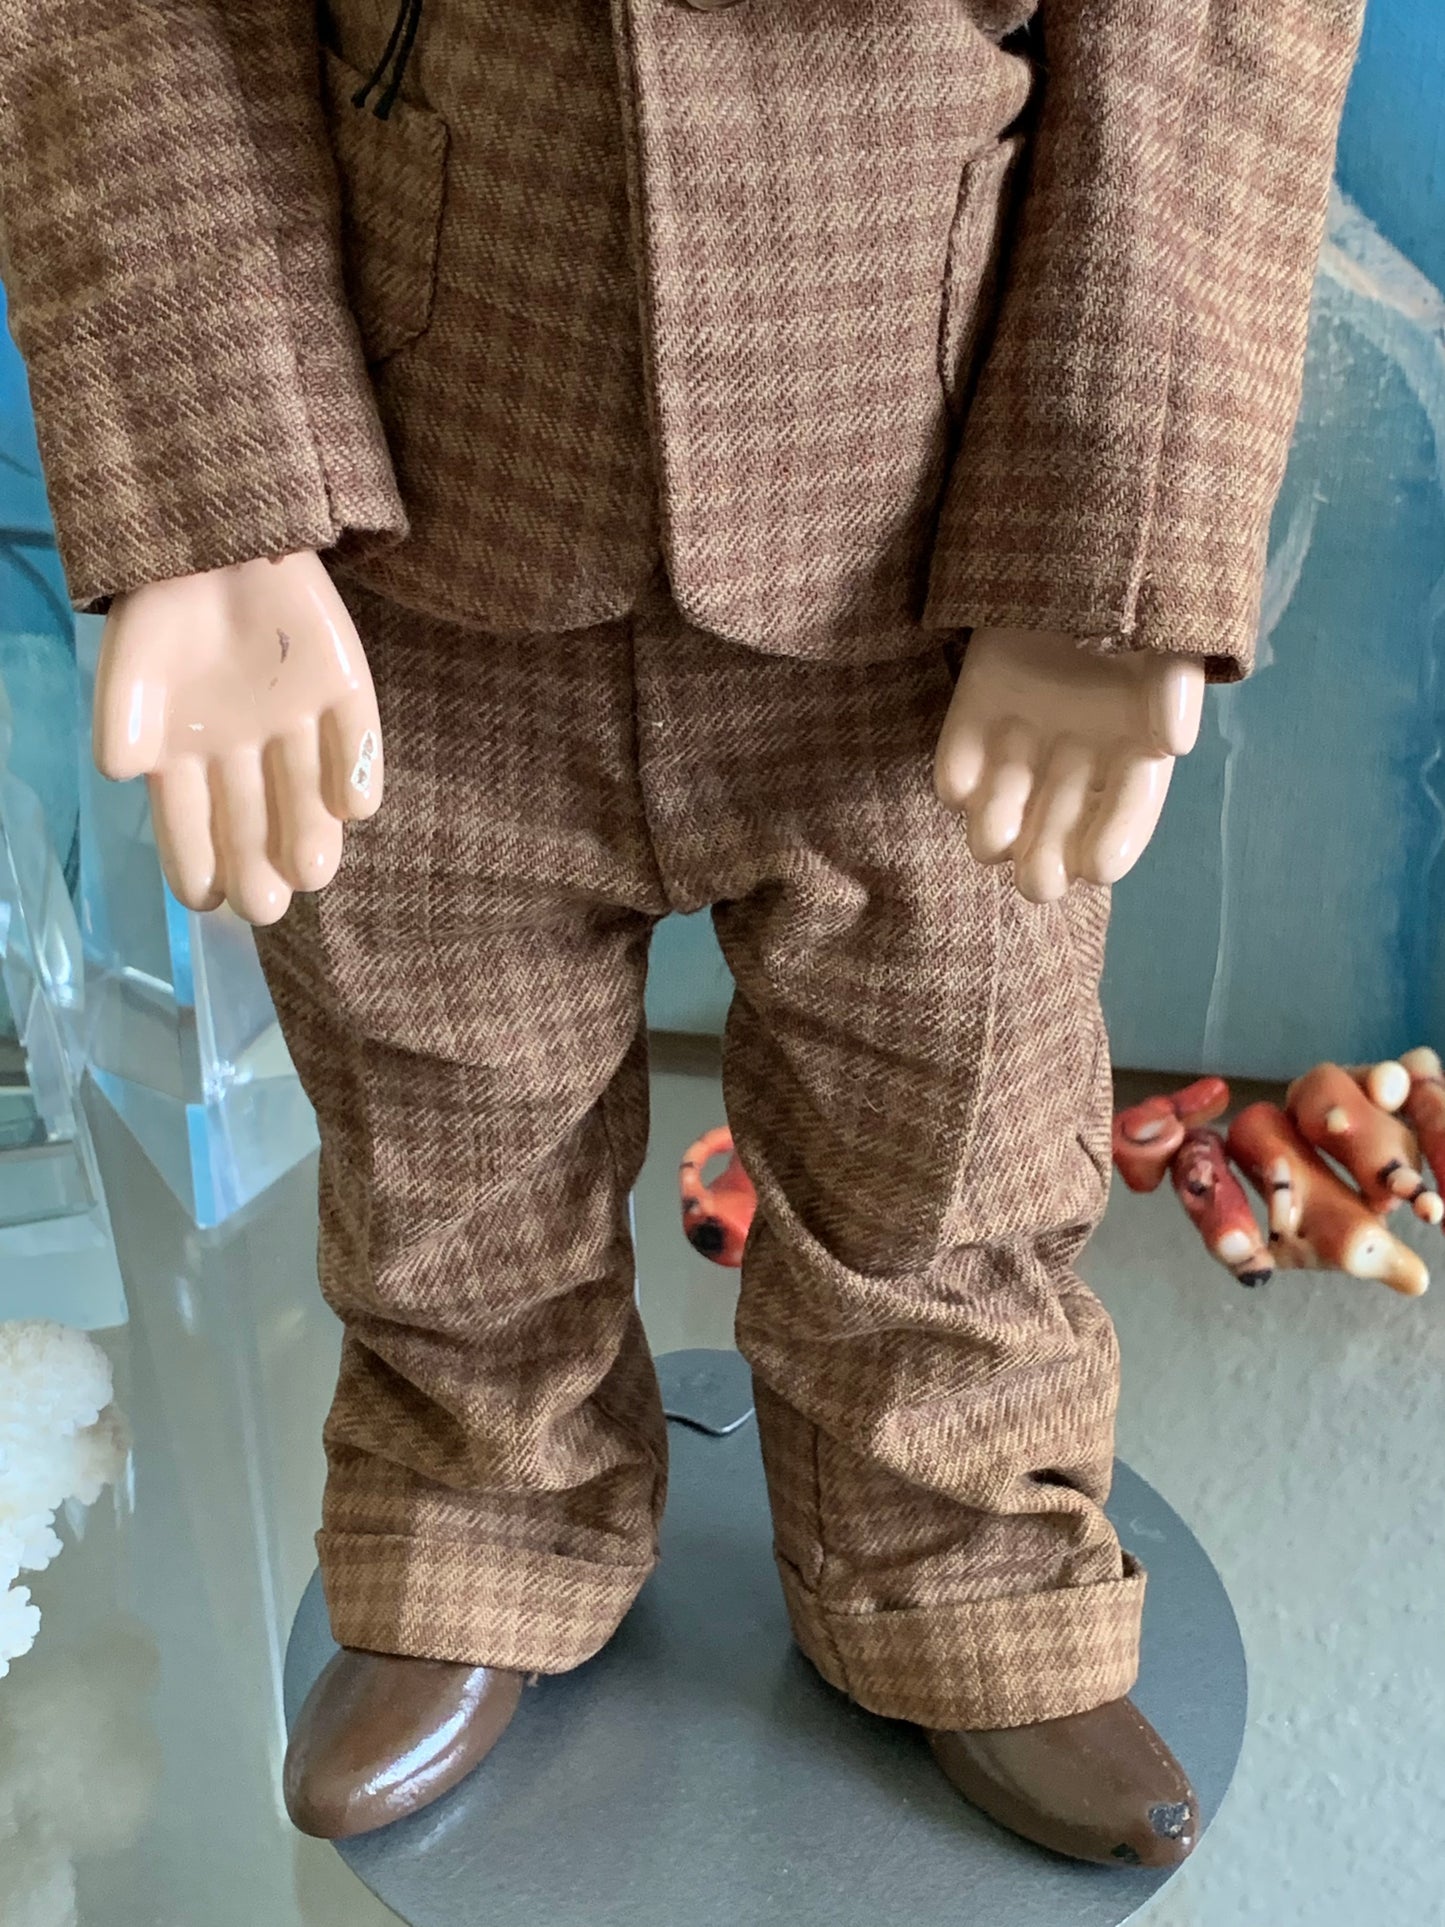 Vintage Edgar Bergen Charlie McCarthy doll